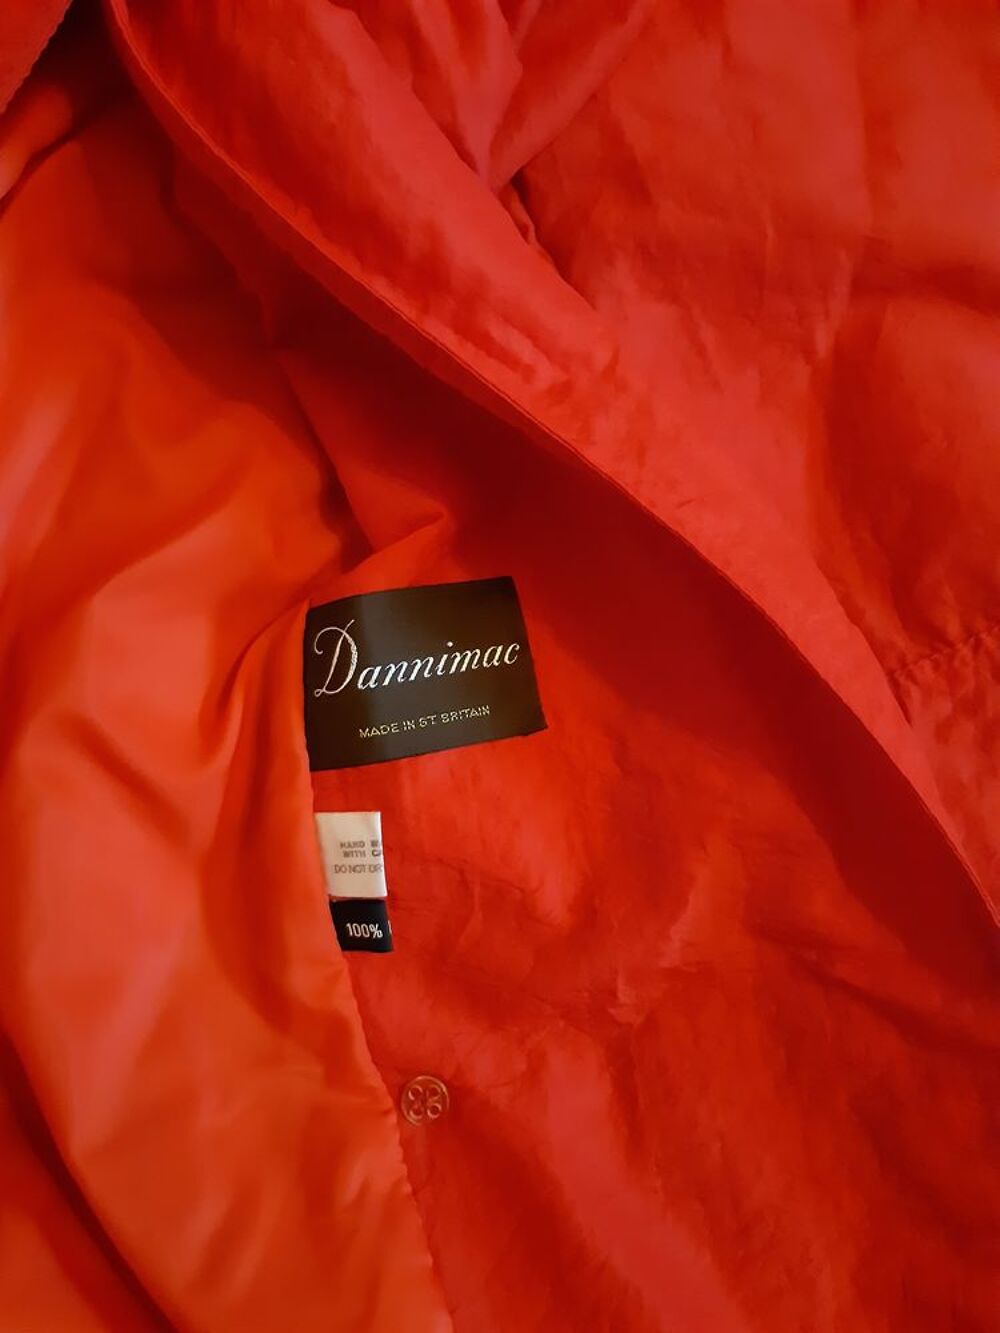 Imper long couleur rouge marque Dannimac T 38 Vtements